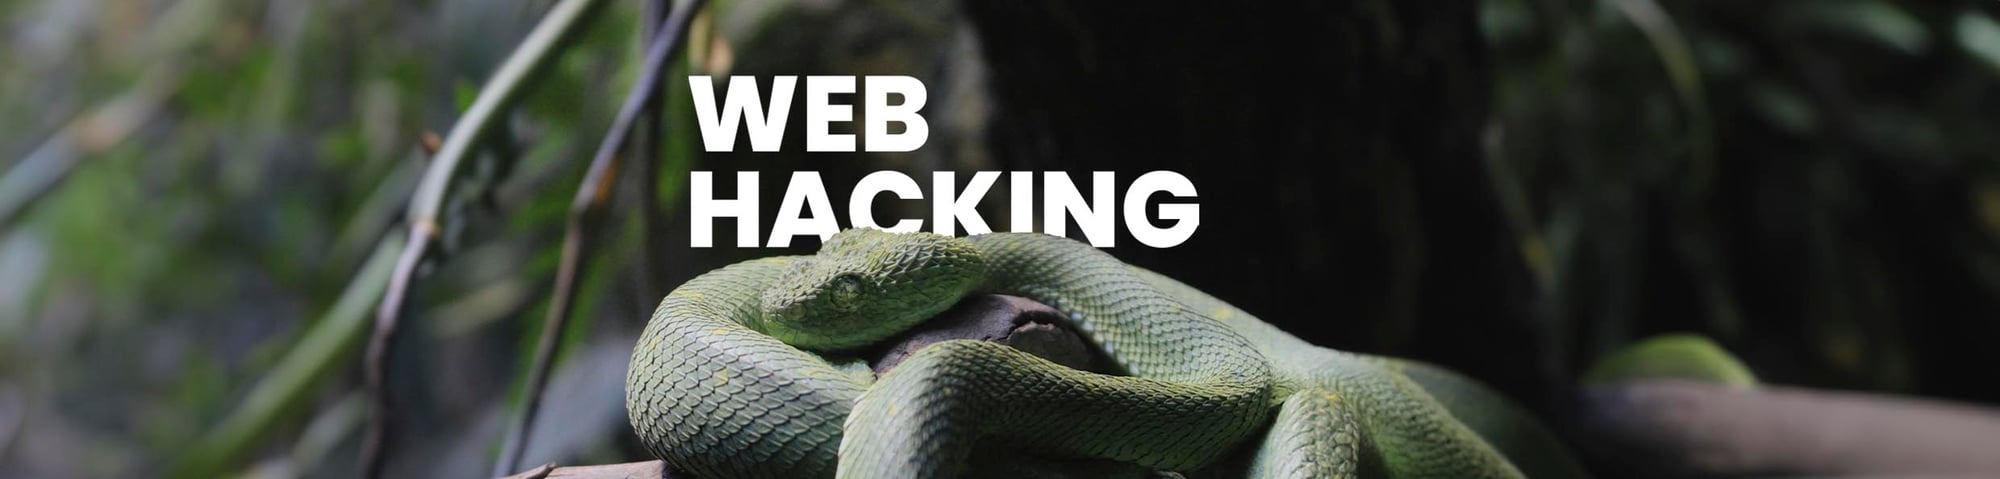 Web Hacking_LP Banner